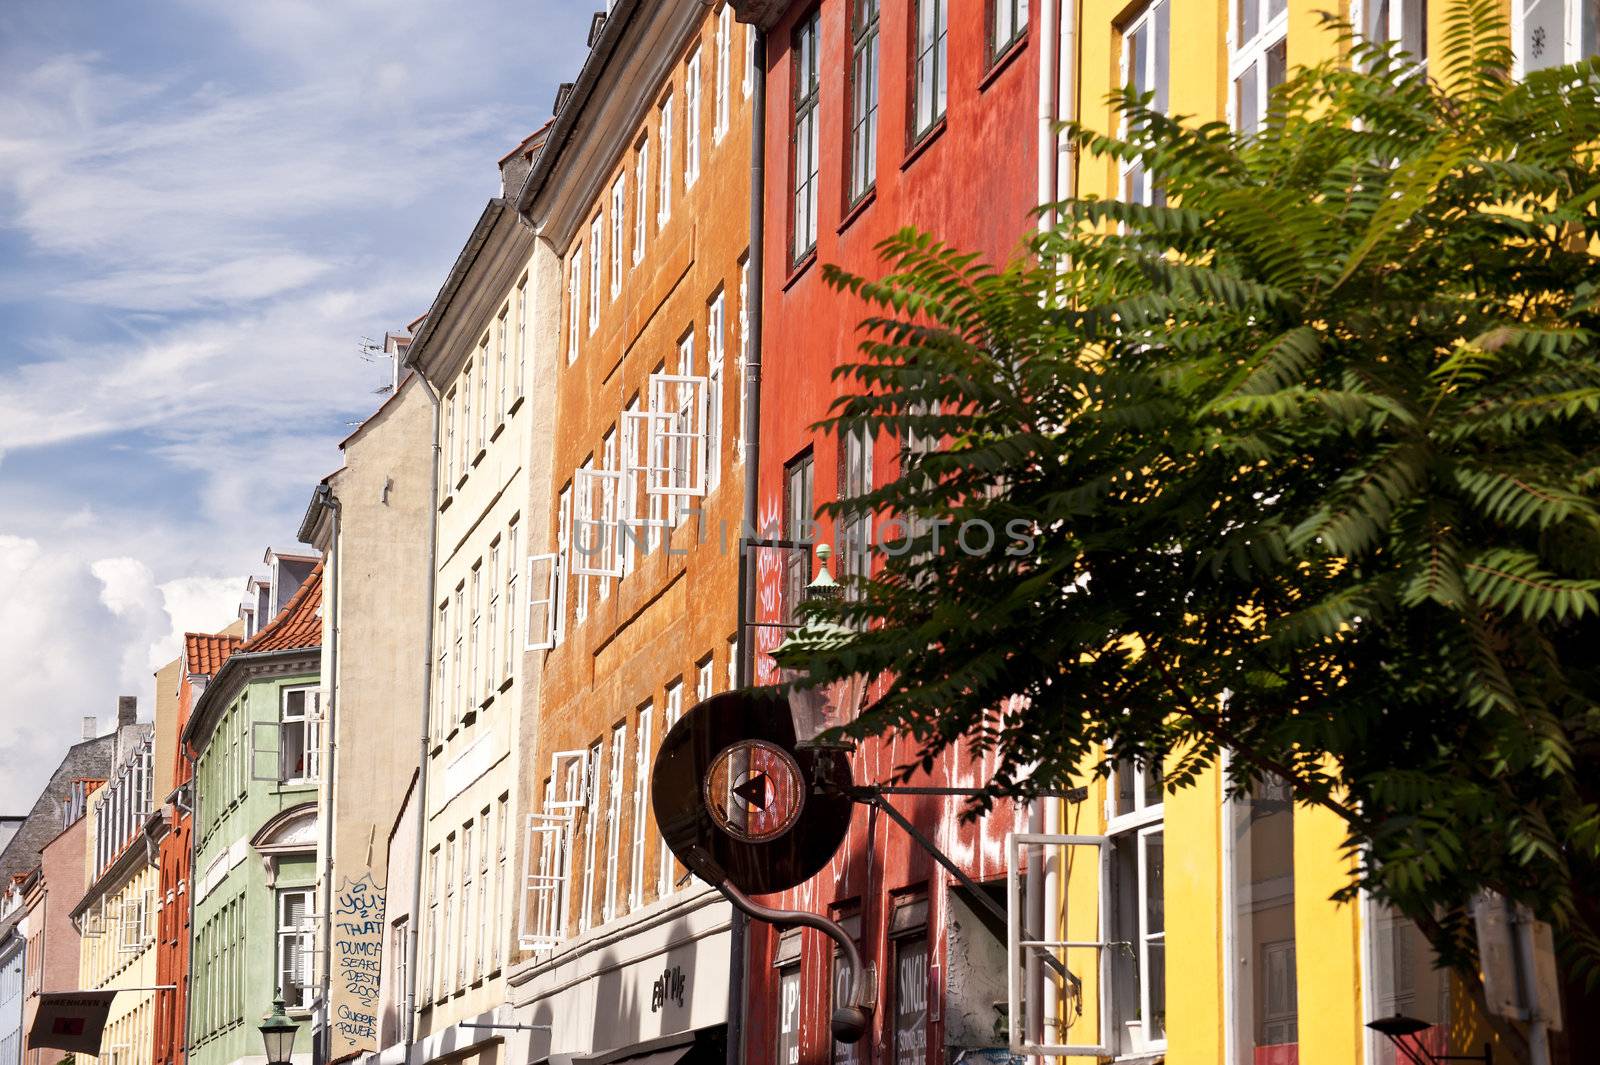 Scene in the old town of Copenhagen